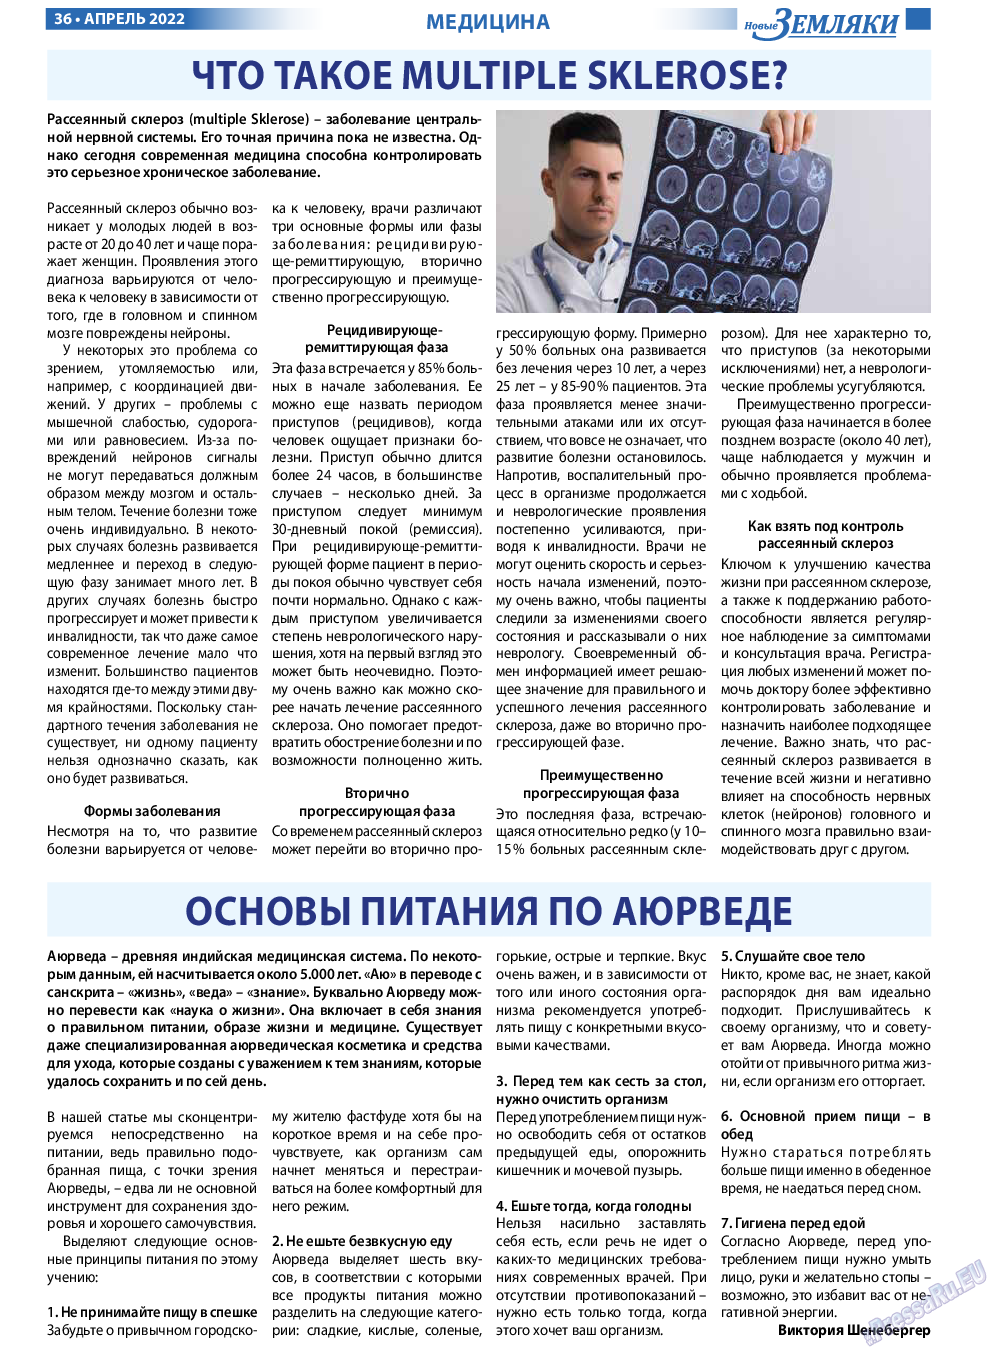 Новые Земляки, газета. 2022 №4 стр.36